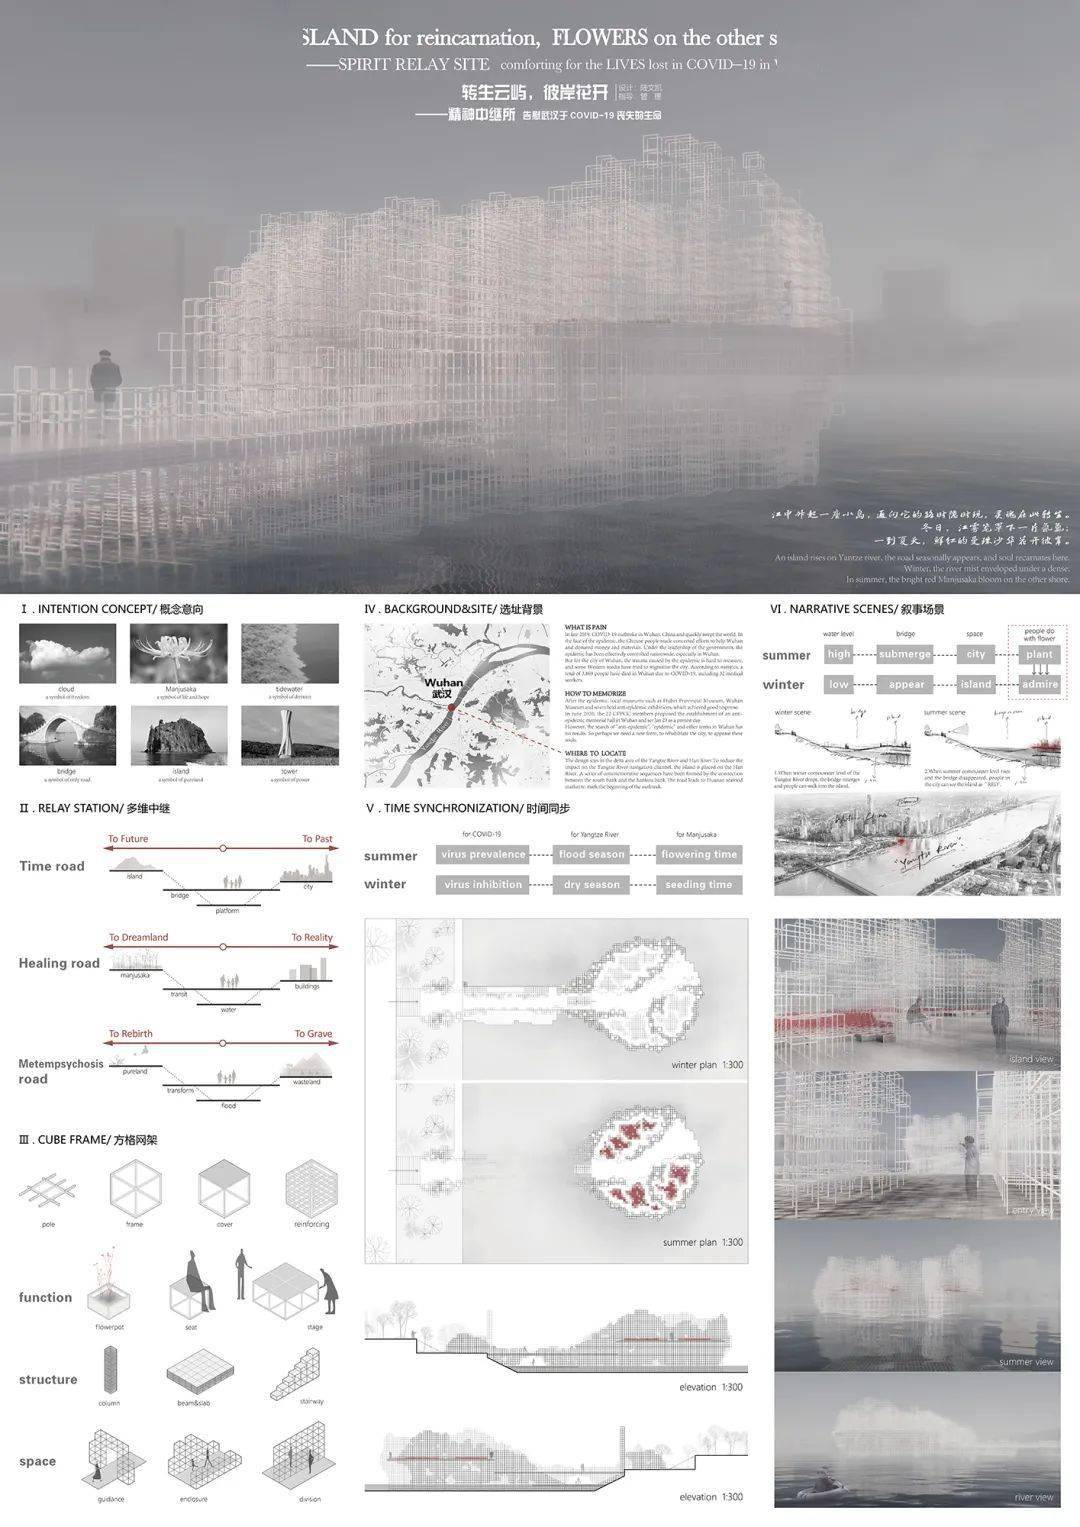 浙江大学建筑学系三年级作品设计排版堪比电影海报